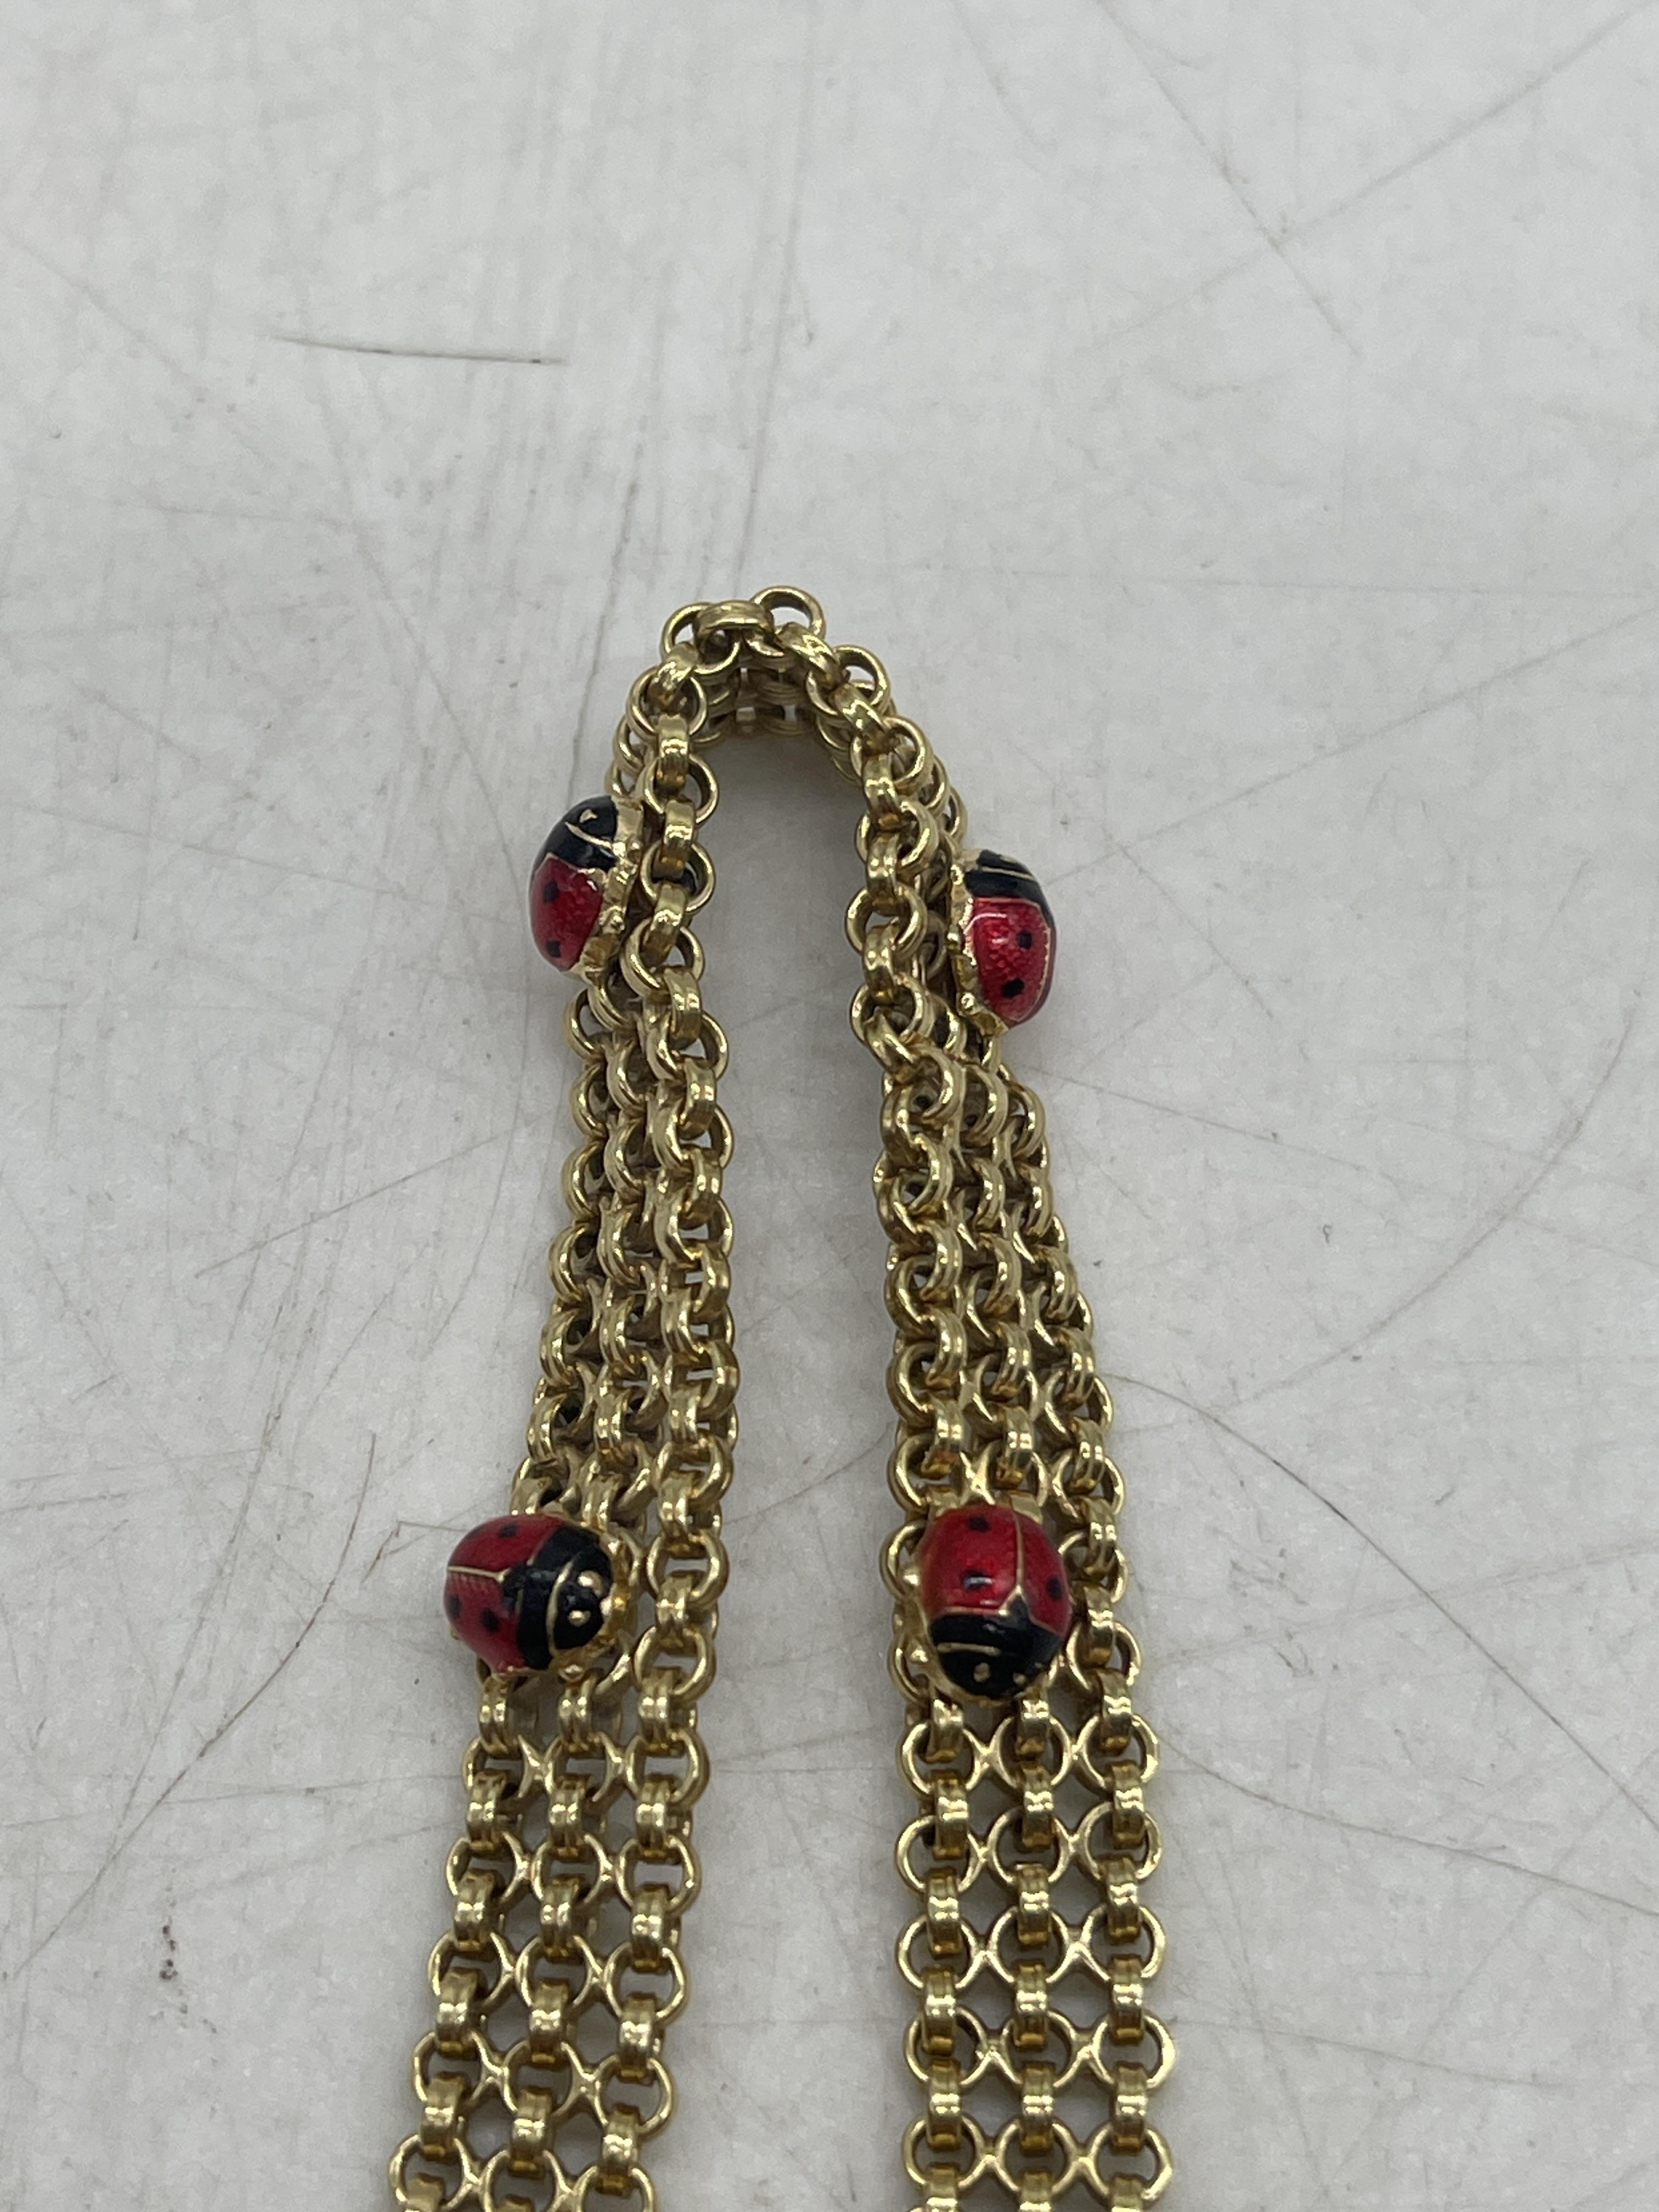 9ct Gold Ladybug Bracelet. - Image 3 of 6